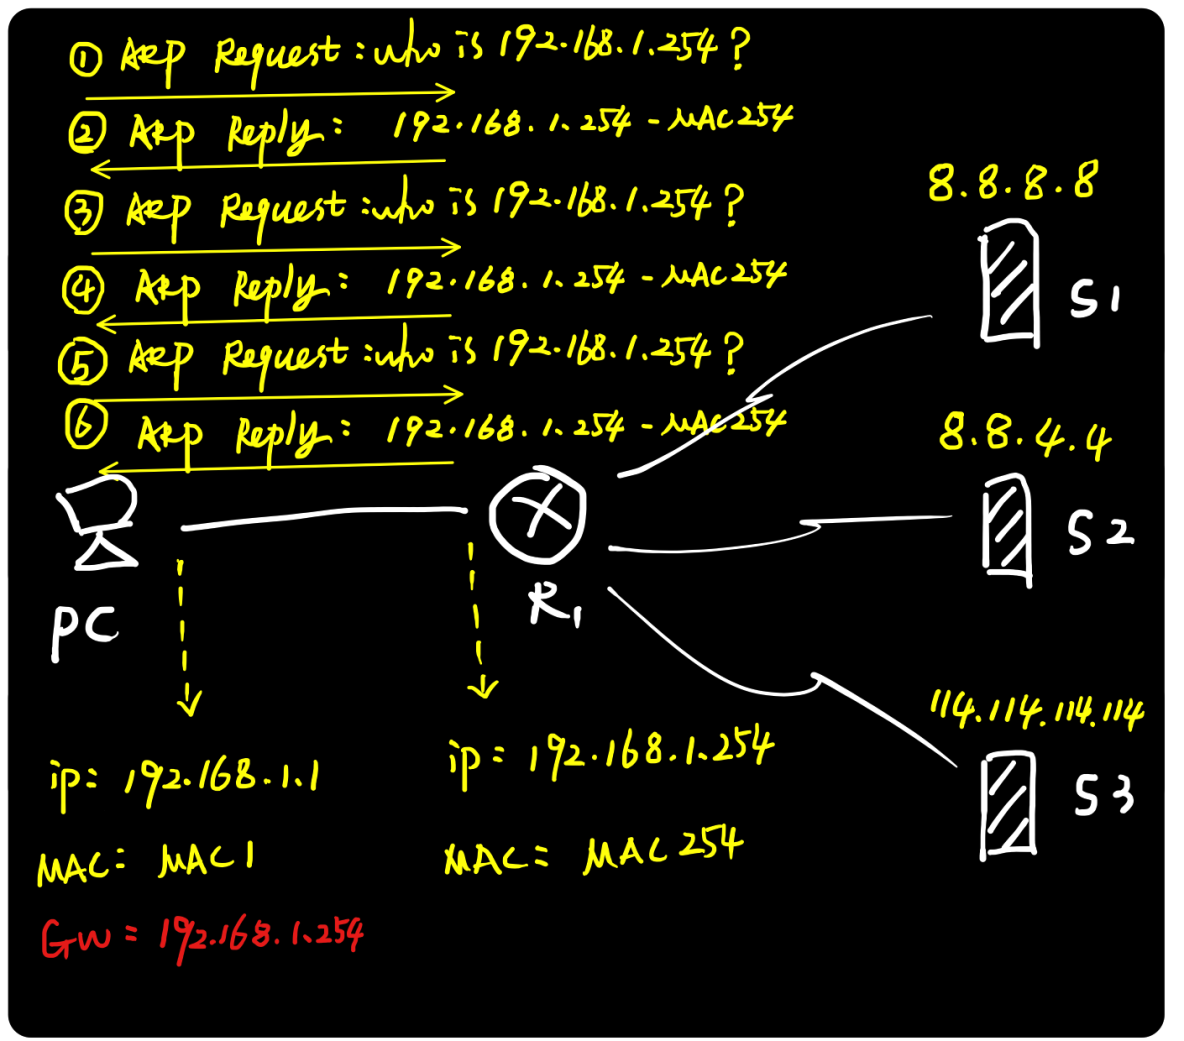 图解ARP协议（四）代理ARP原理与实践（“善意的欺骗”）_ARP协议_10